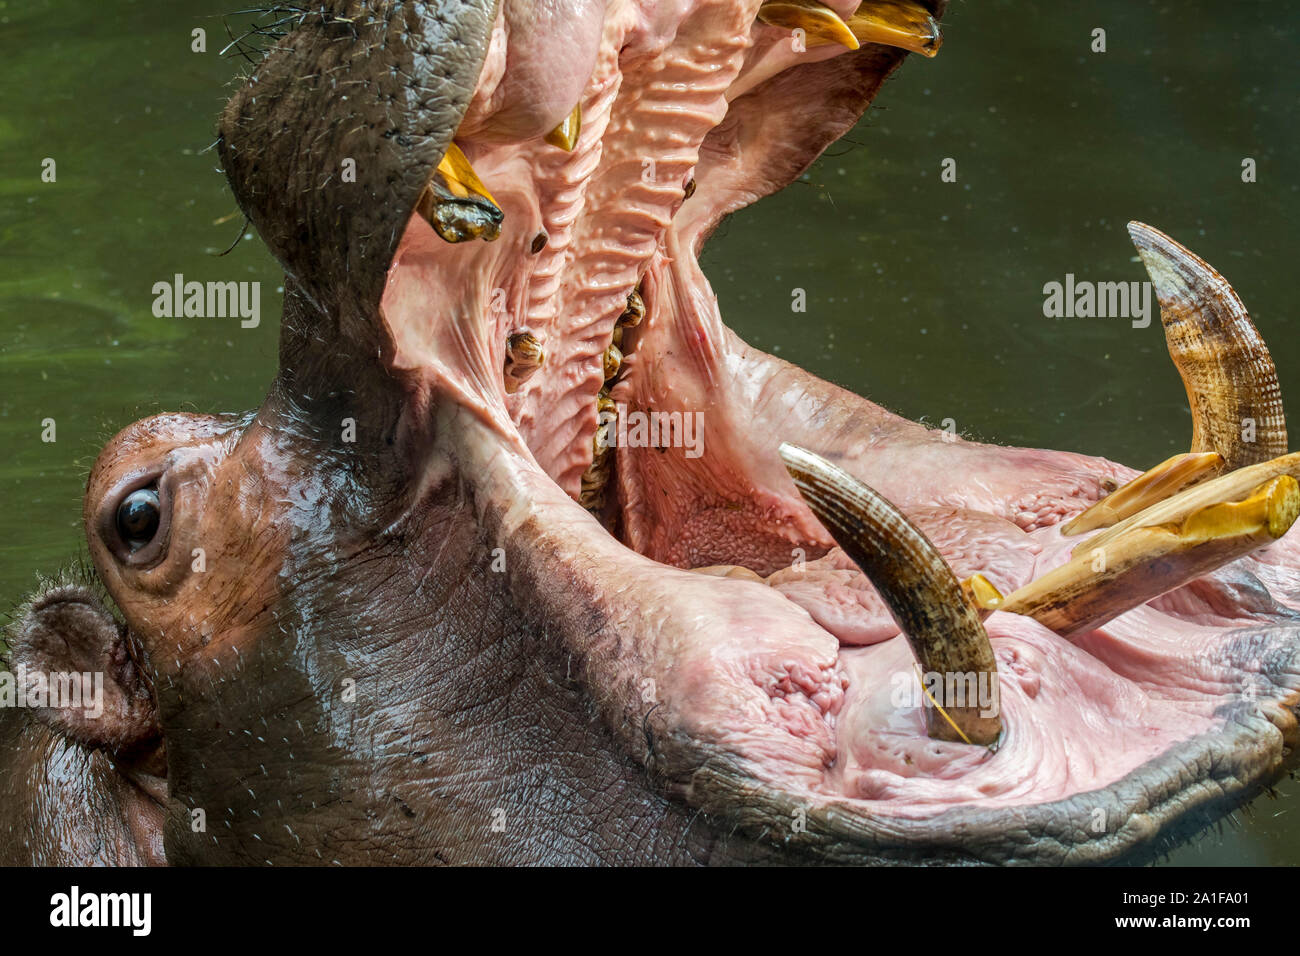 Close up d'Hippopotame (Hippopotamus amphibius) en montrant les dents et l'étang d'énormes canines grandes défenses dans la bouche grande ouverte Banque D'Images